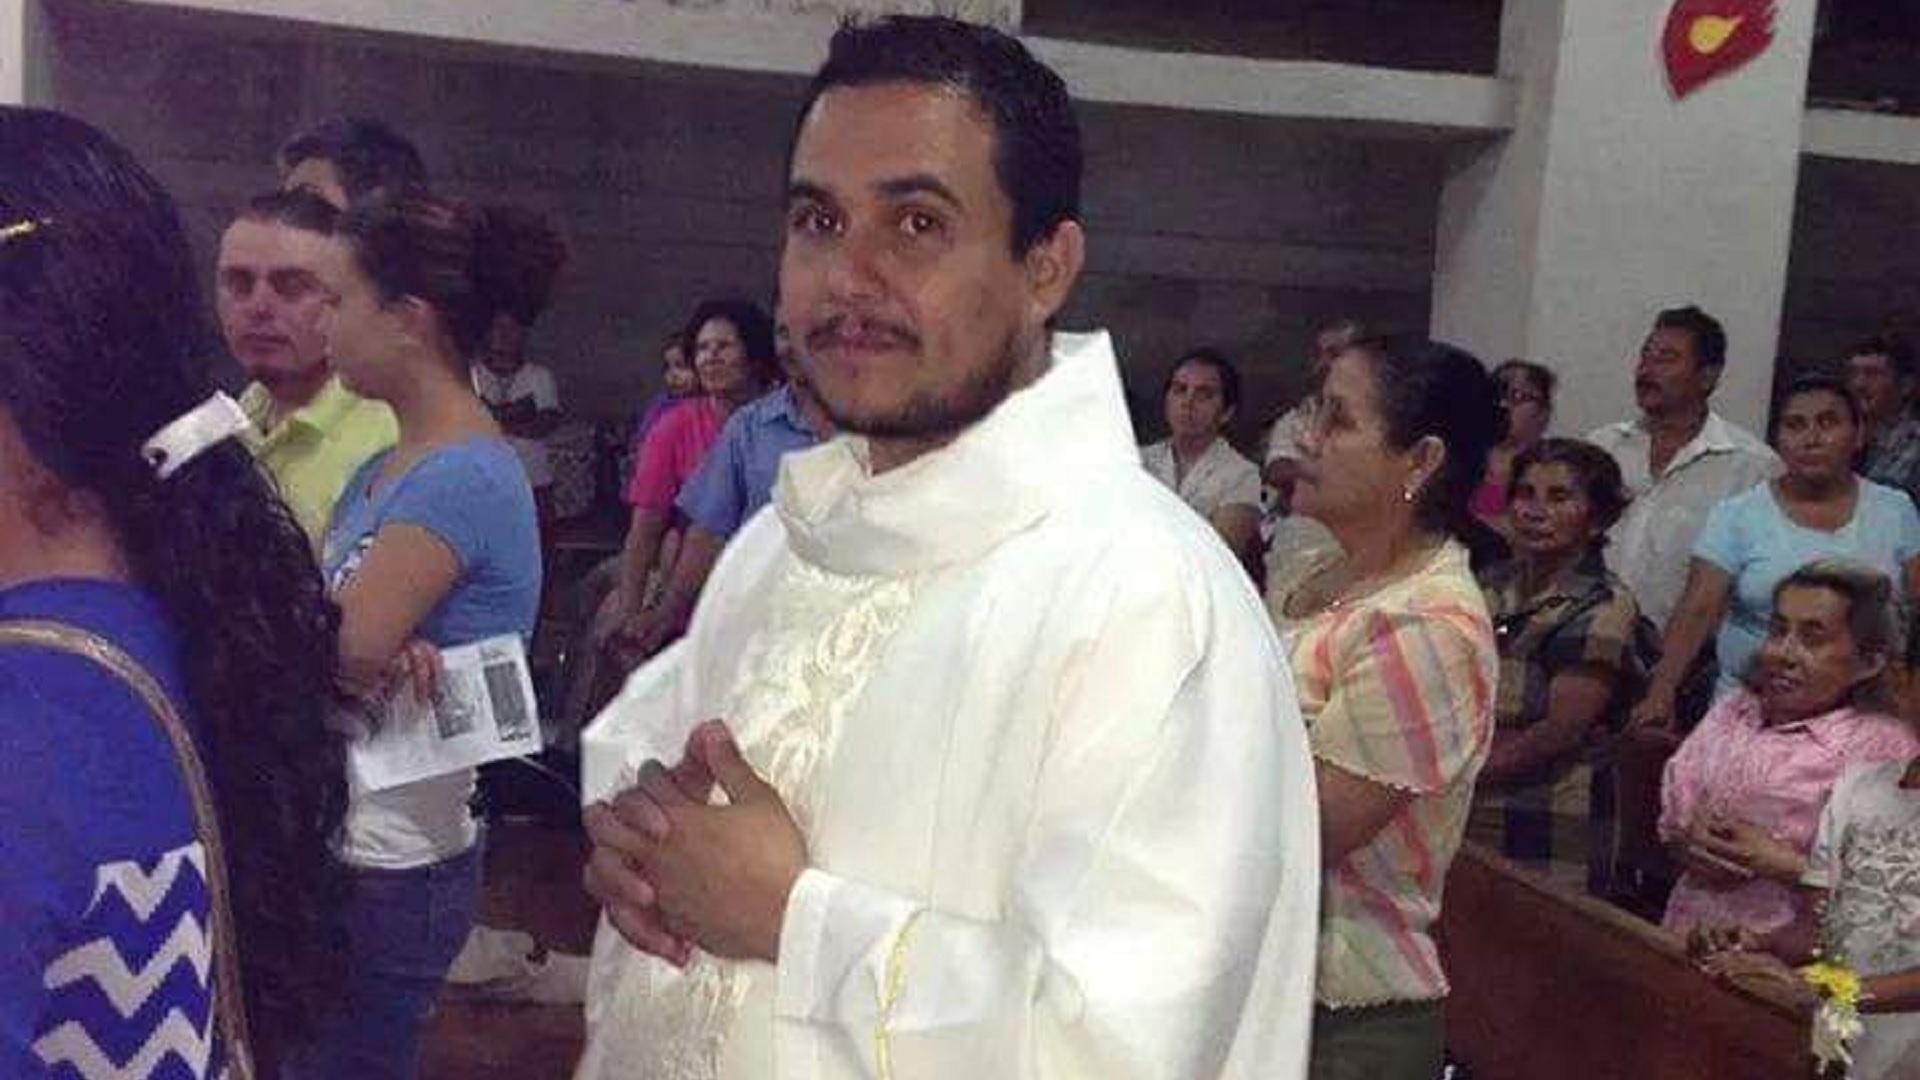 El sacerdote detenido por la dictadura de Daniel Ortega fue trasladado al centro de torturas “El Chipote” en Managua